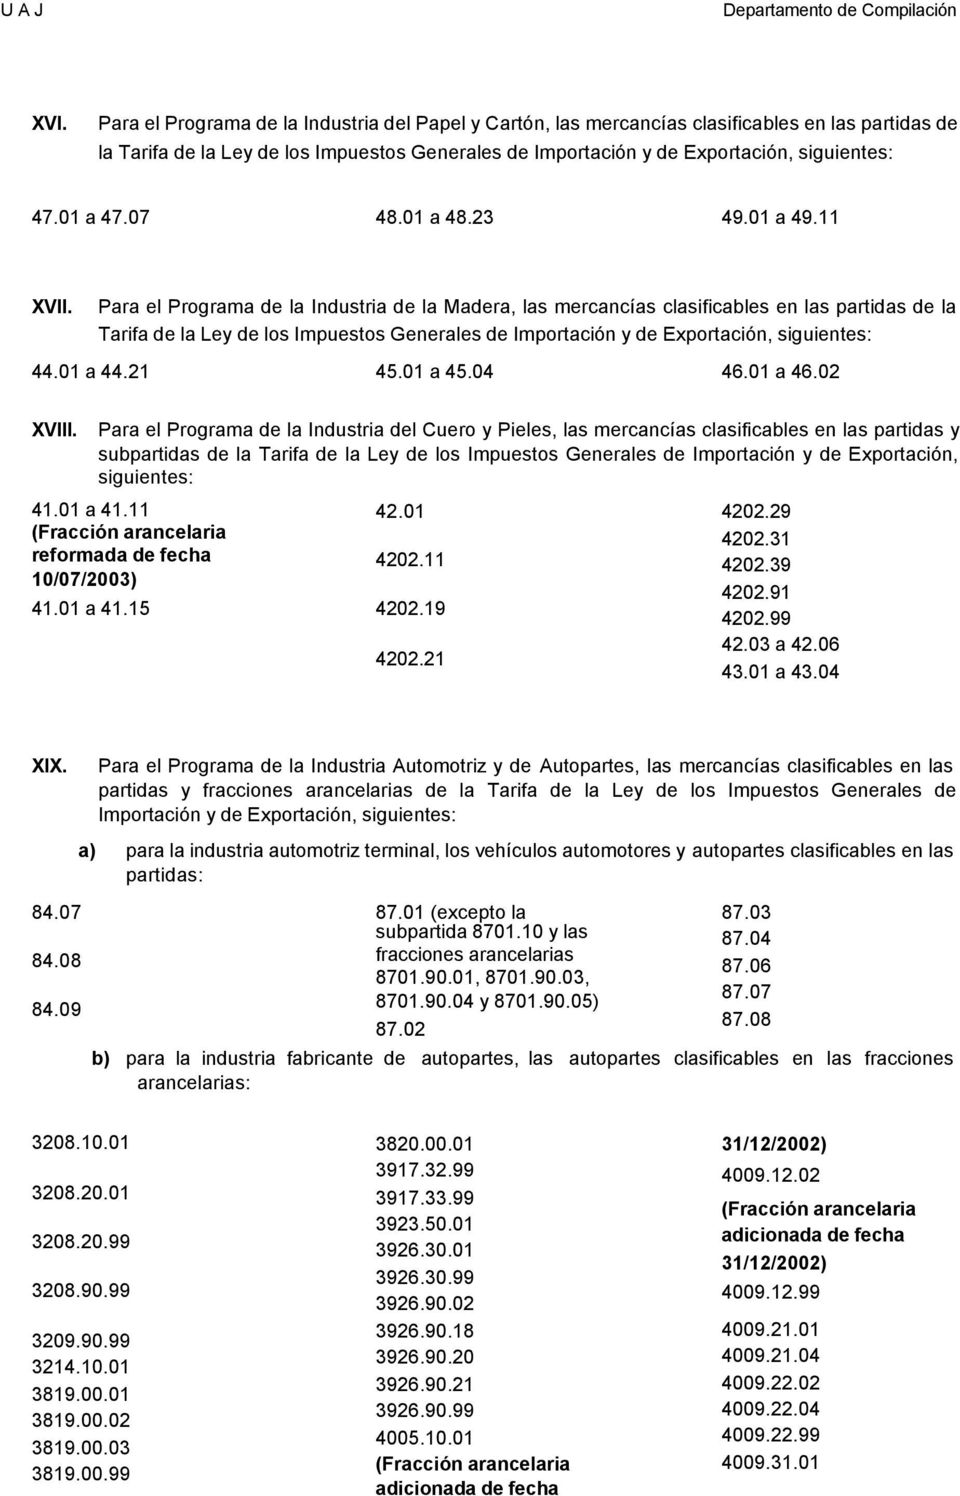 Para el Programa de la Industria de la Madera, las mercancías clasificables en las partidas de la Tarifa de la Ley de los Impuestos Generales de Importación y de Exportación, siguientes: 44.01 a 44.